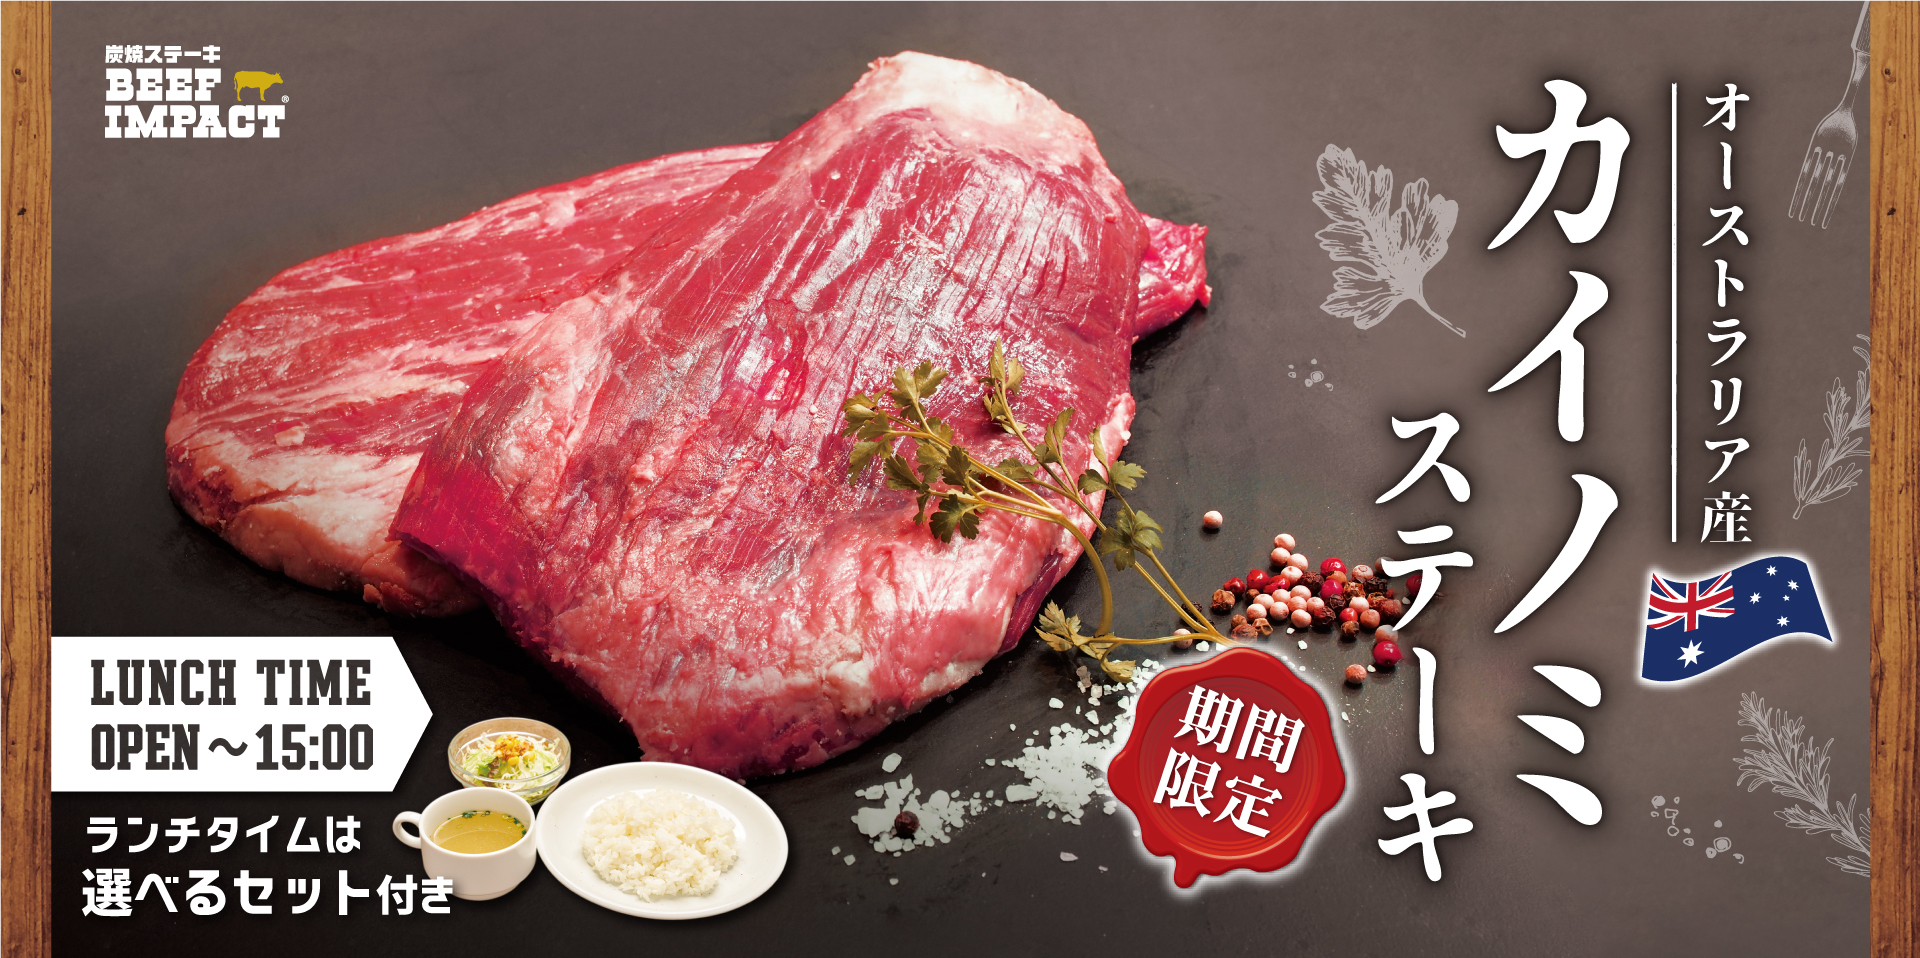 炭焼ステーキの専門店「ビーフインパクト」が8月1日から
「カイノミステーキフェア」を北海道・千葉の全店舗で開始